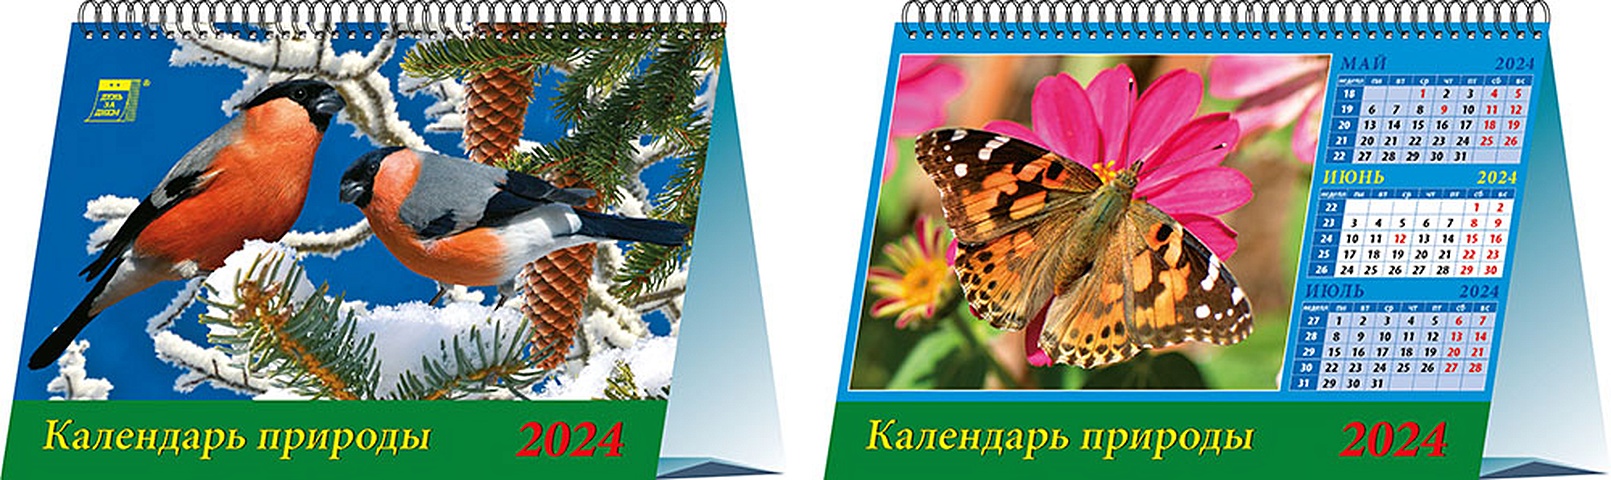 календарь настольный на 2023 год календарь родной природы Календарь 2024г 200*140 Календарь природы настольный, домик